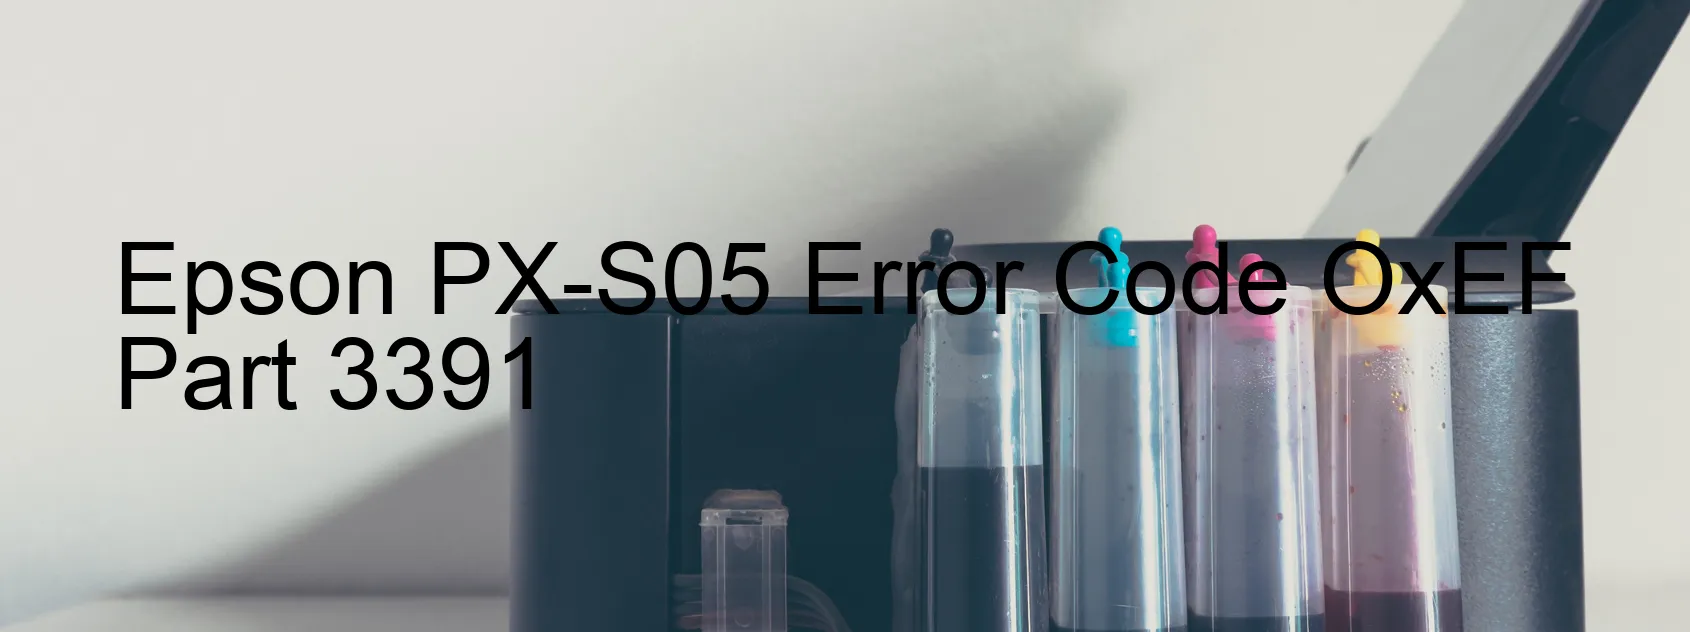 Epson PX-S05 Error Code OxEF  Part 3391